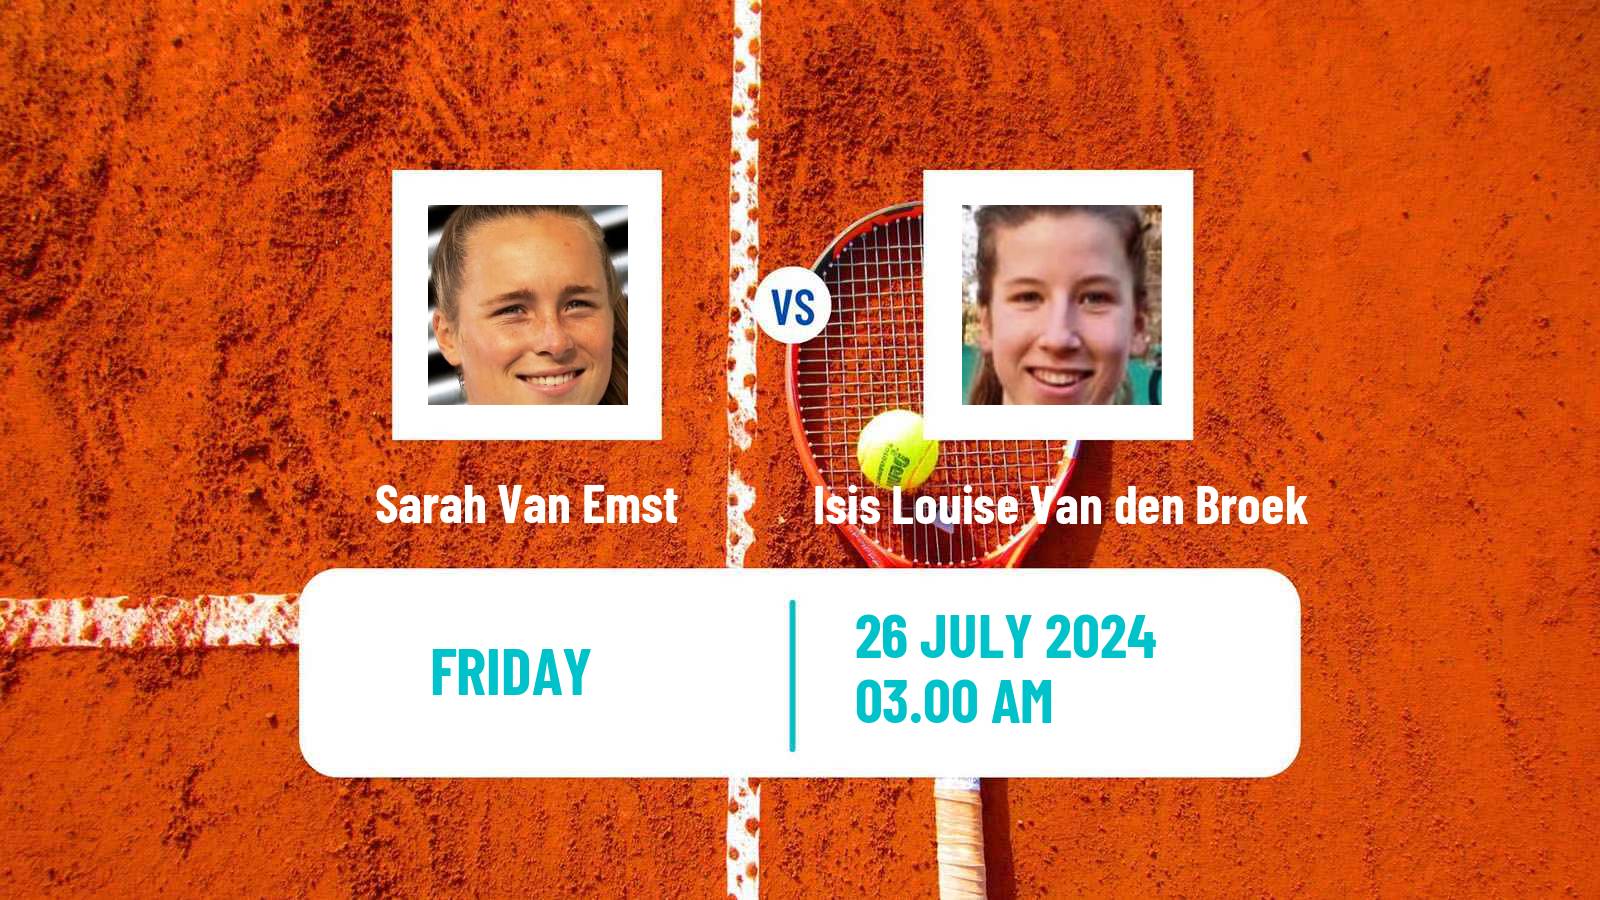 Tennis ITF W15 Kursumlijska Banja 13 Women Sarah Van Emst - Isis Louise Van den Broek